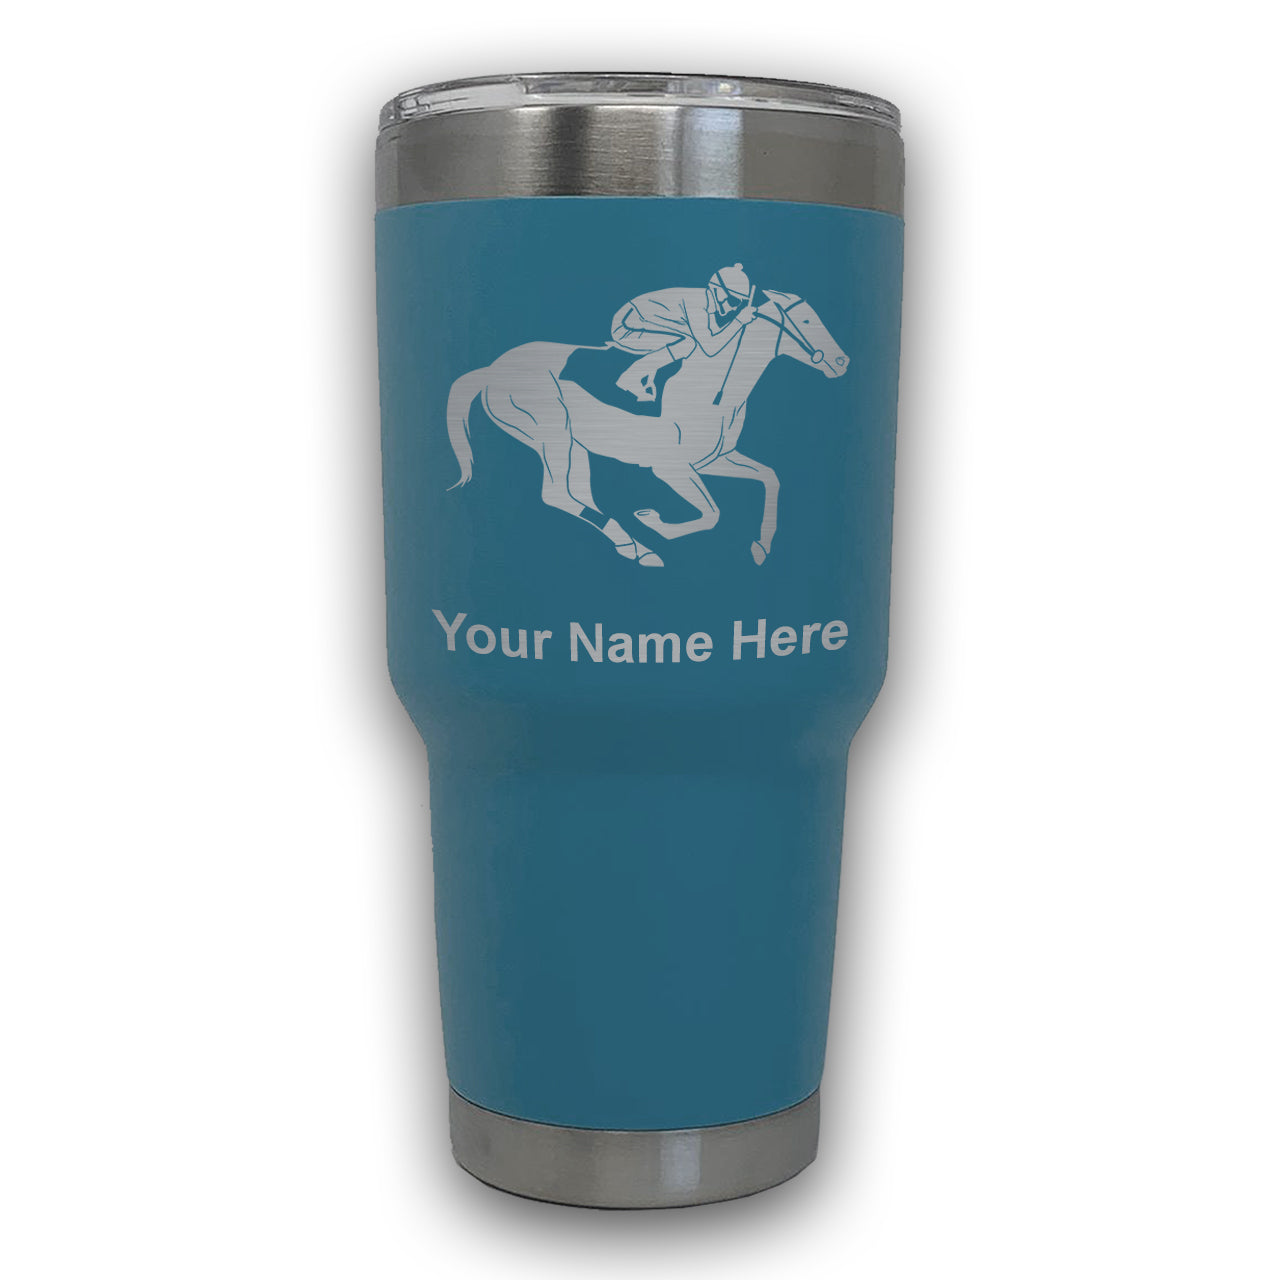 LaserGram 30oz Tumbler Mug, Horse Racing, Personalized Engraving Included